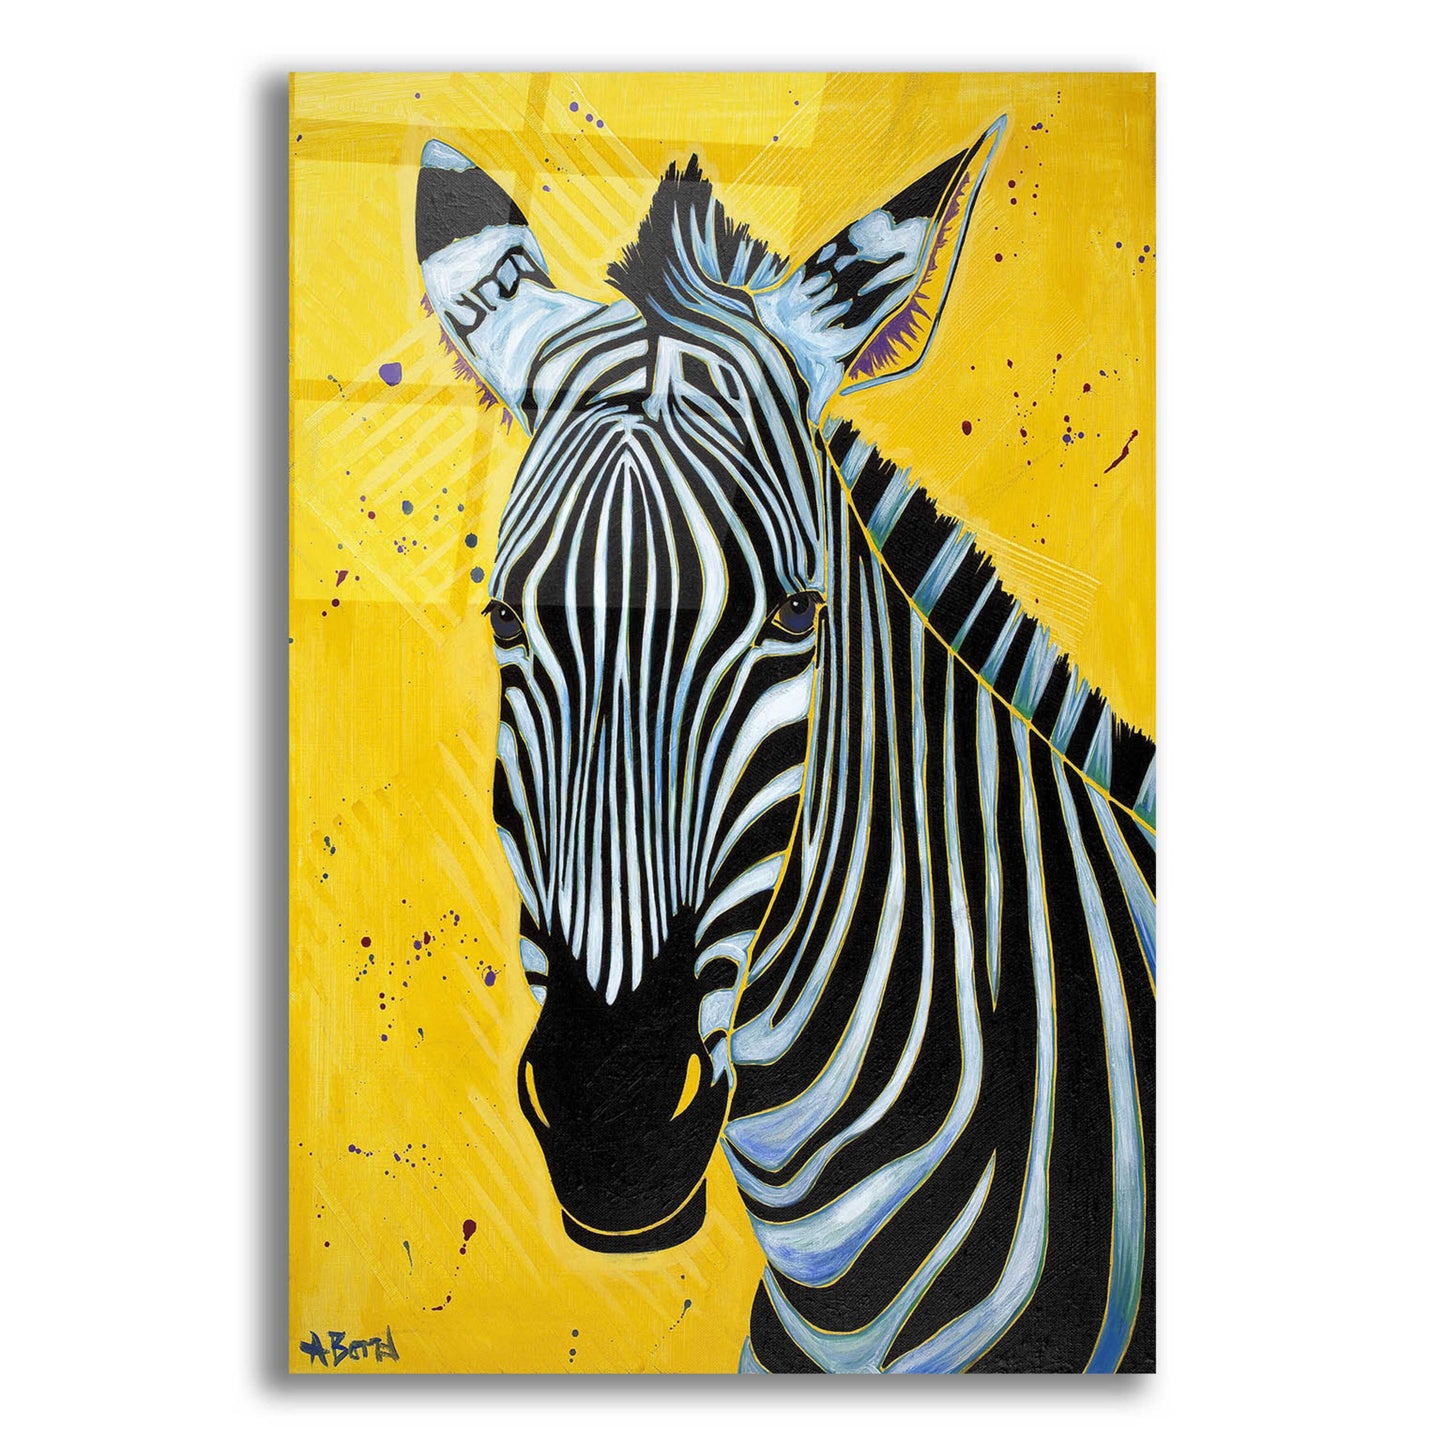 Epic Art 'Zebra' by Angela Bond Acrylic Glass Wall Art,12x16